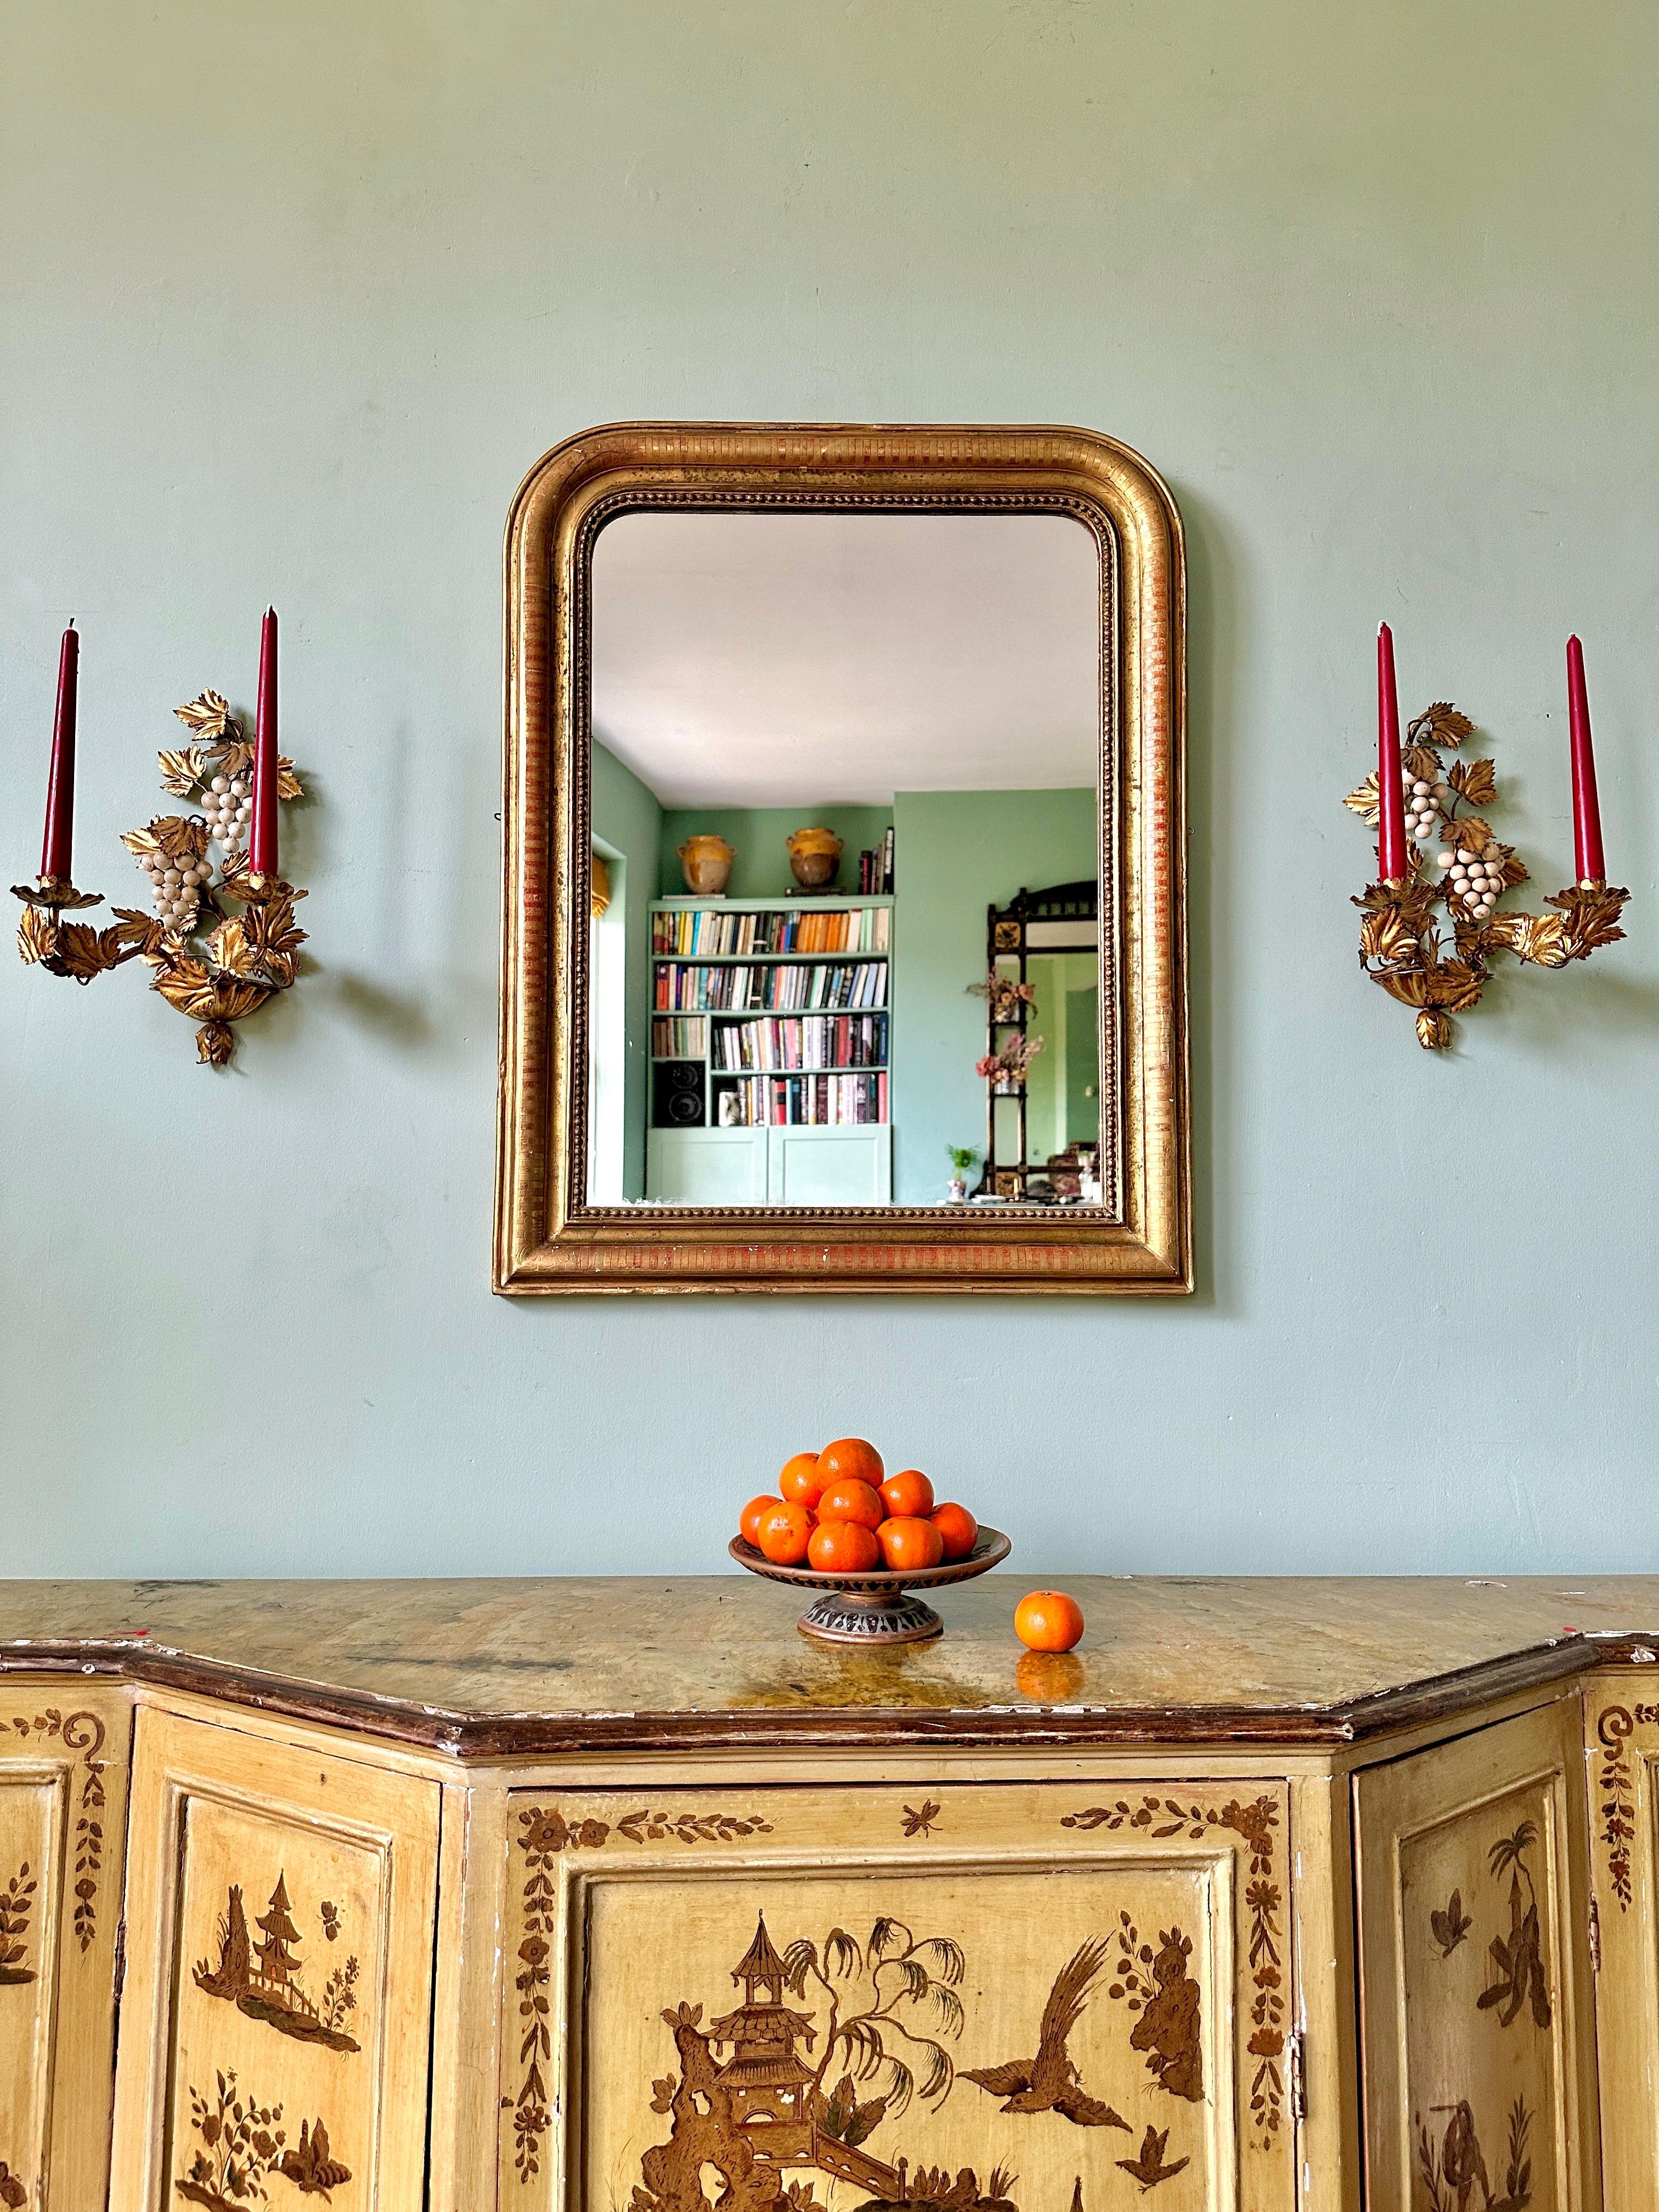 Miroir en arc de cercle Louis Philippe de la fin du 19e siècle.

Magnifique miroir français circa 1840 avec cadre doré géométrique et feuillage gravé. La bordure dorée est superbement décolorée, révélant le manteau de bole rouge qui se trouve en